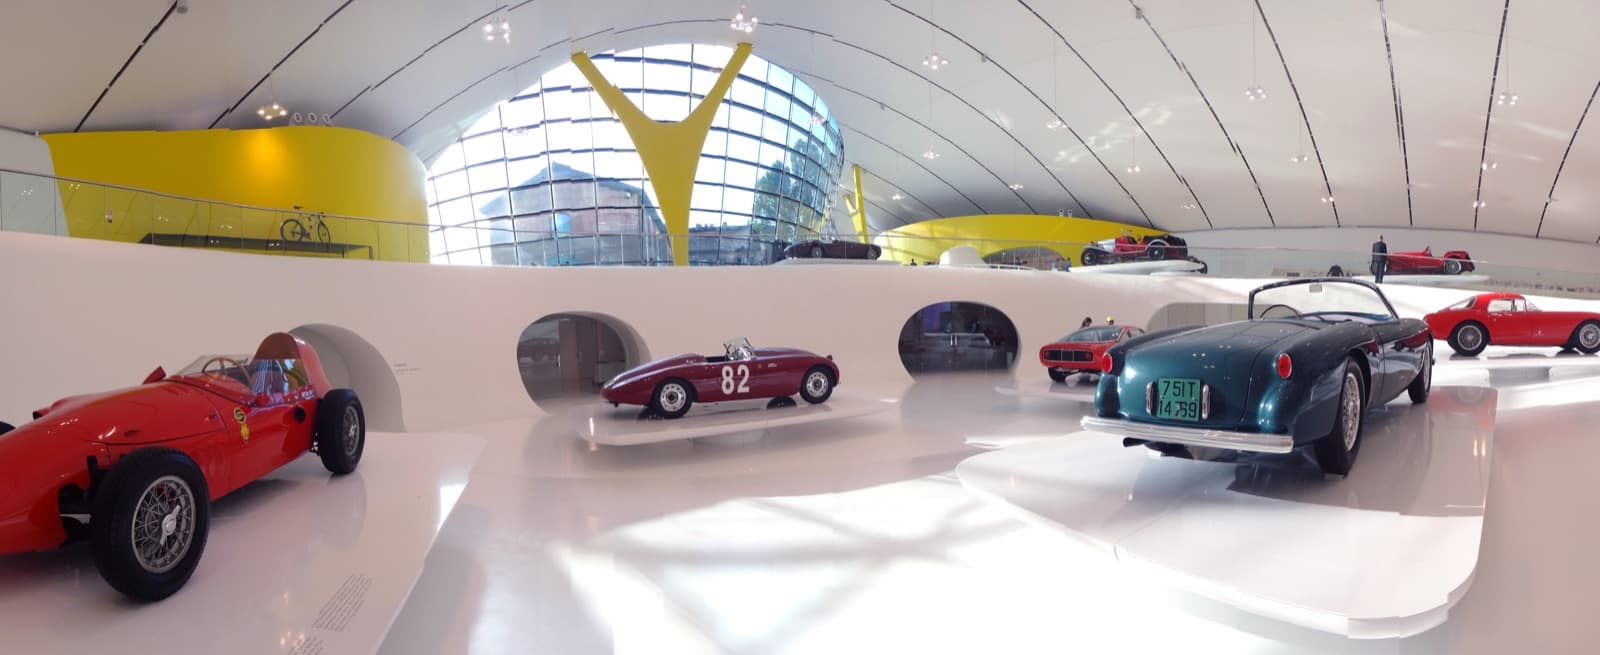 Modena, Museo Enzo Ferrari, interno Ph. D-VISIONS via shutterstock solo uso editoriale